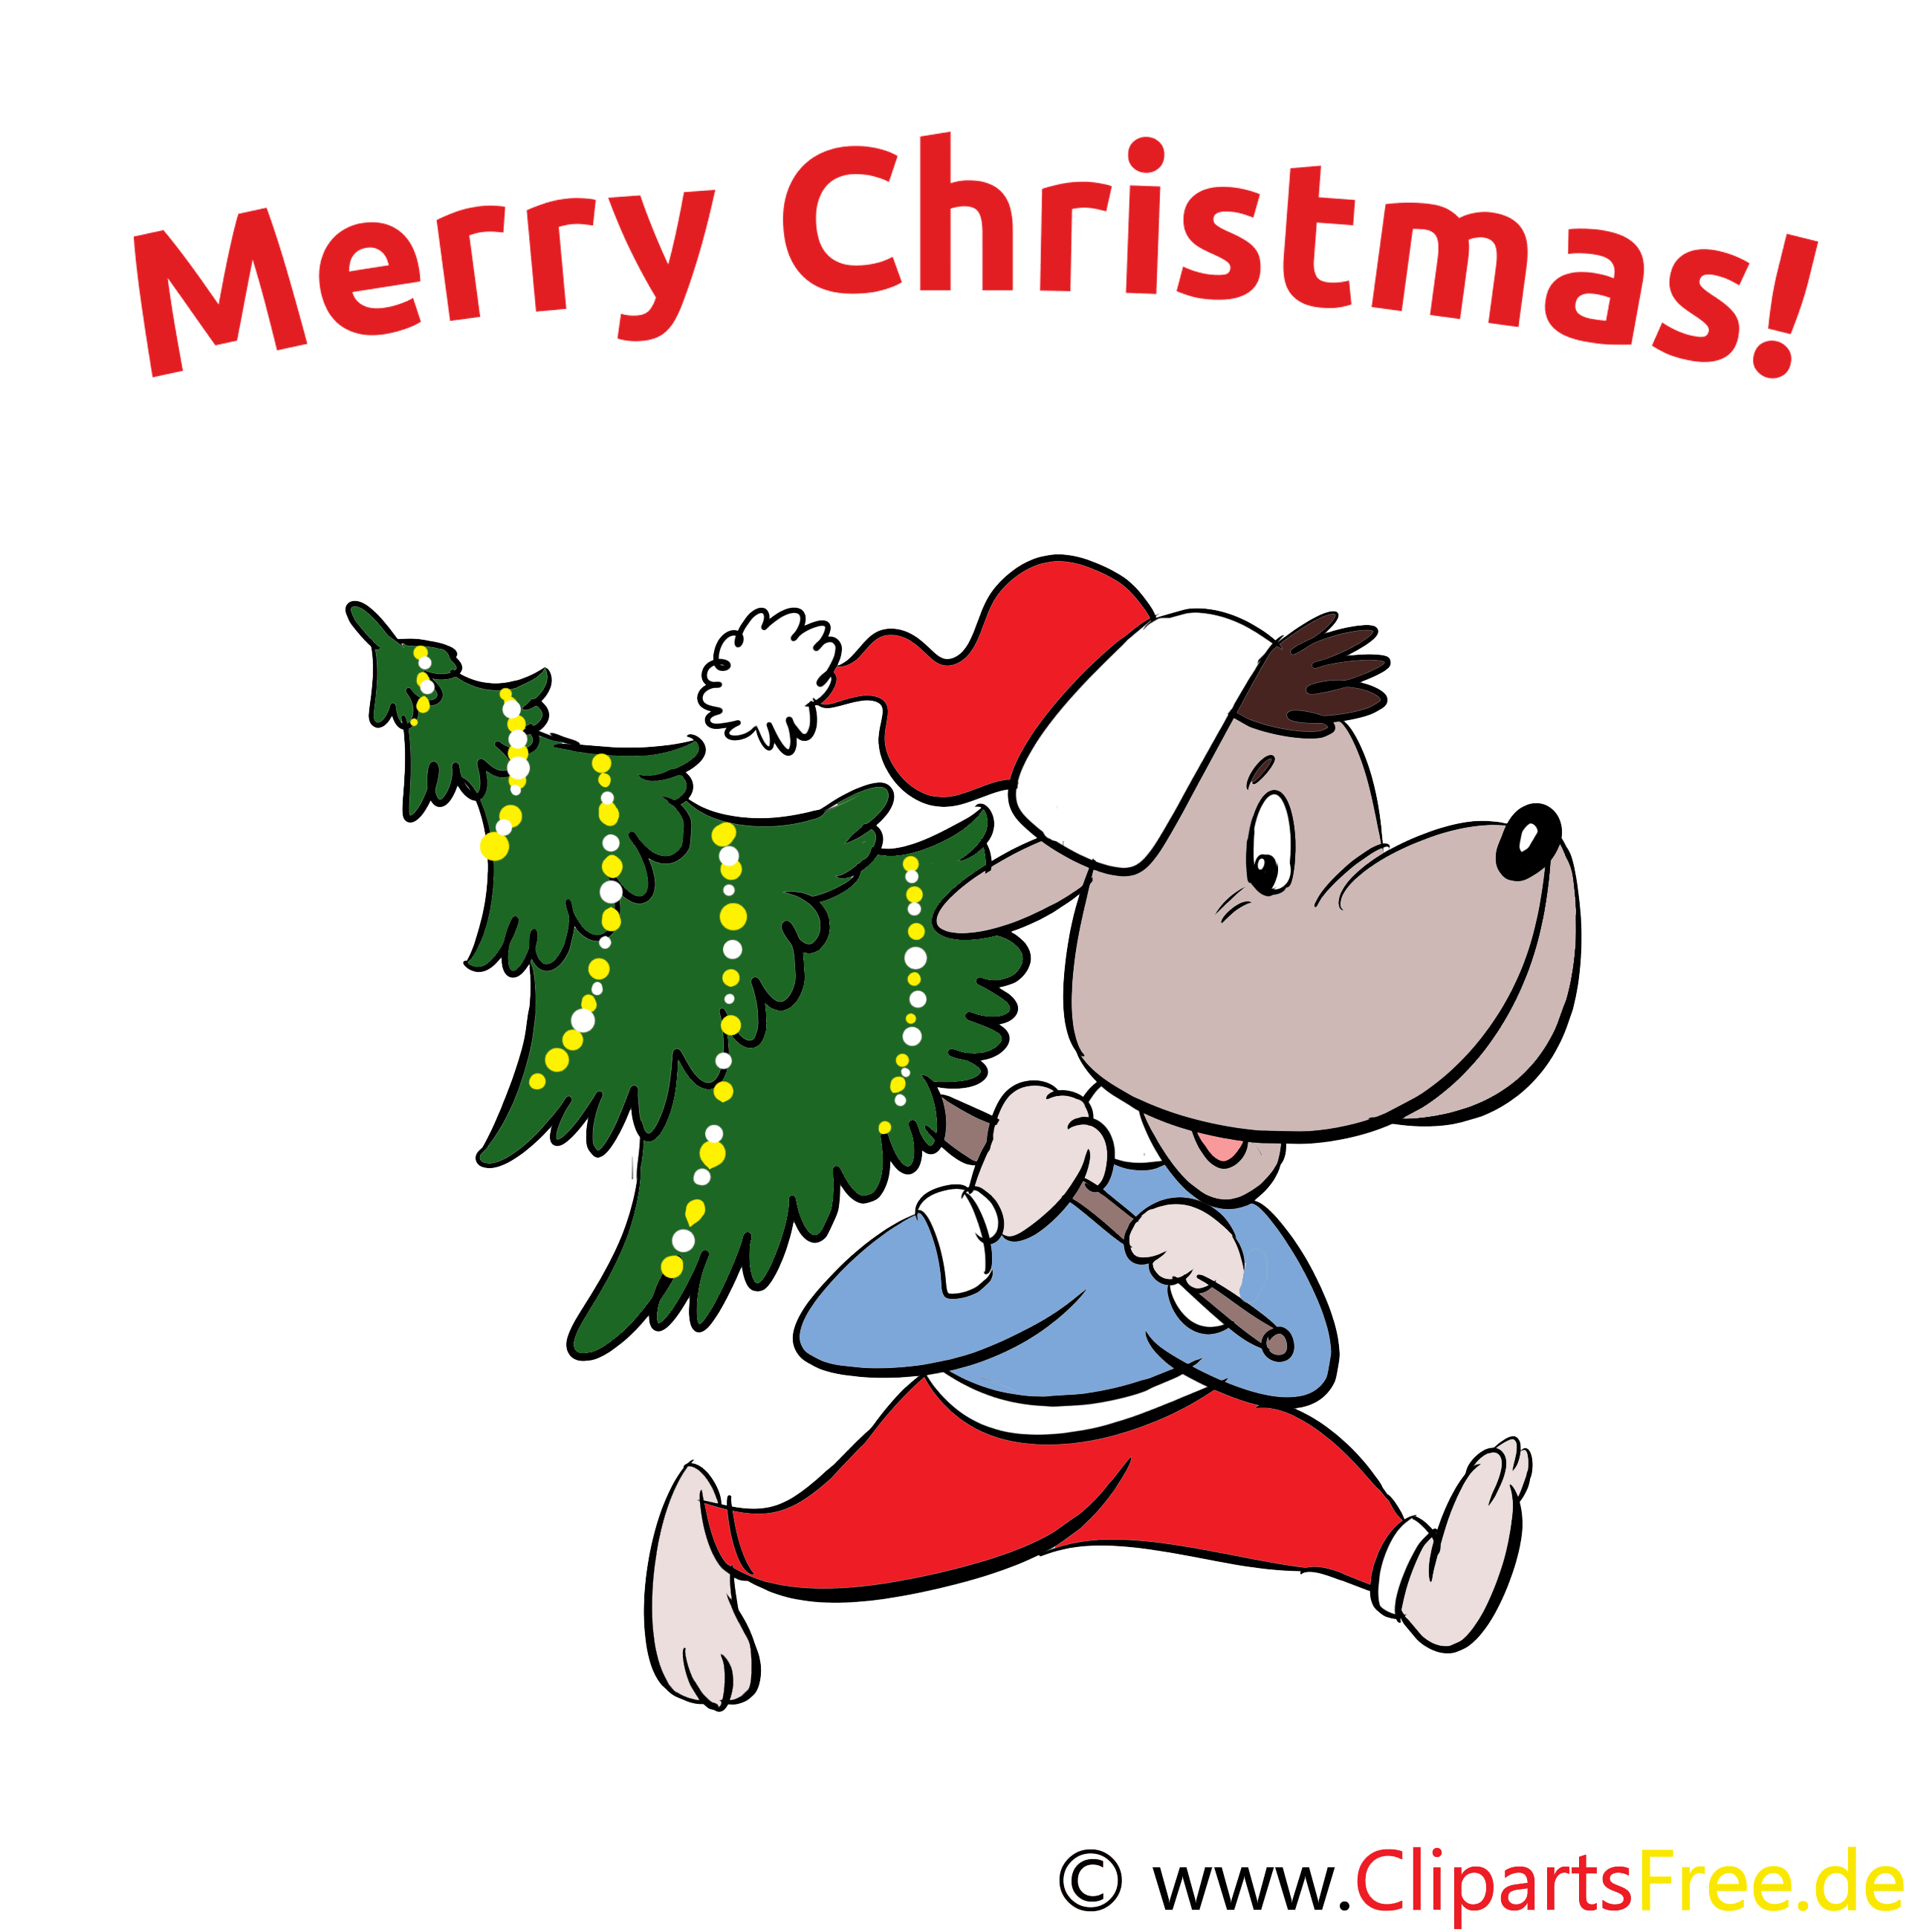 witzige weihnachtskarten gratis  merry christmas en